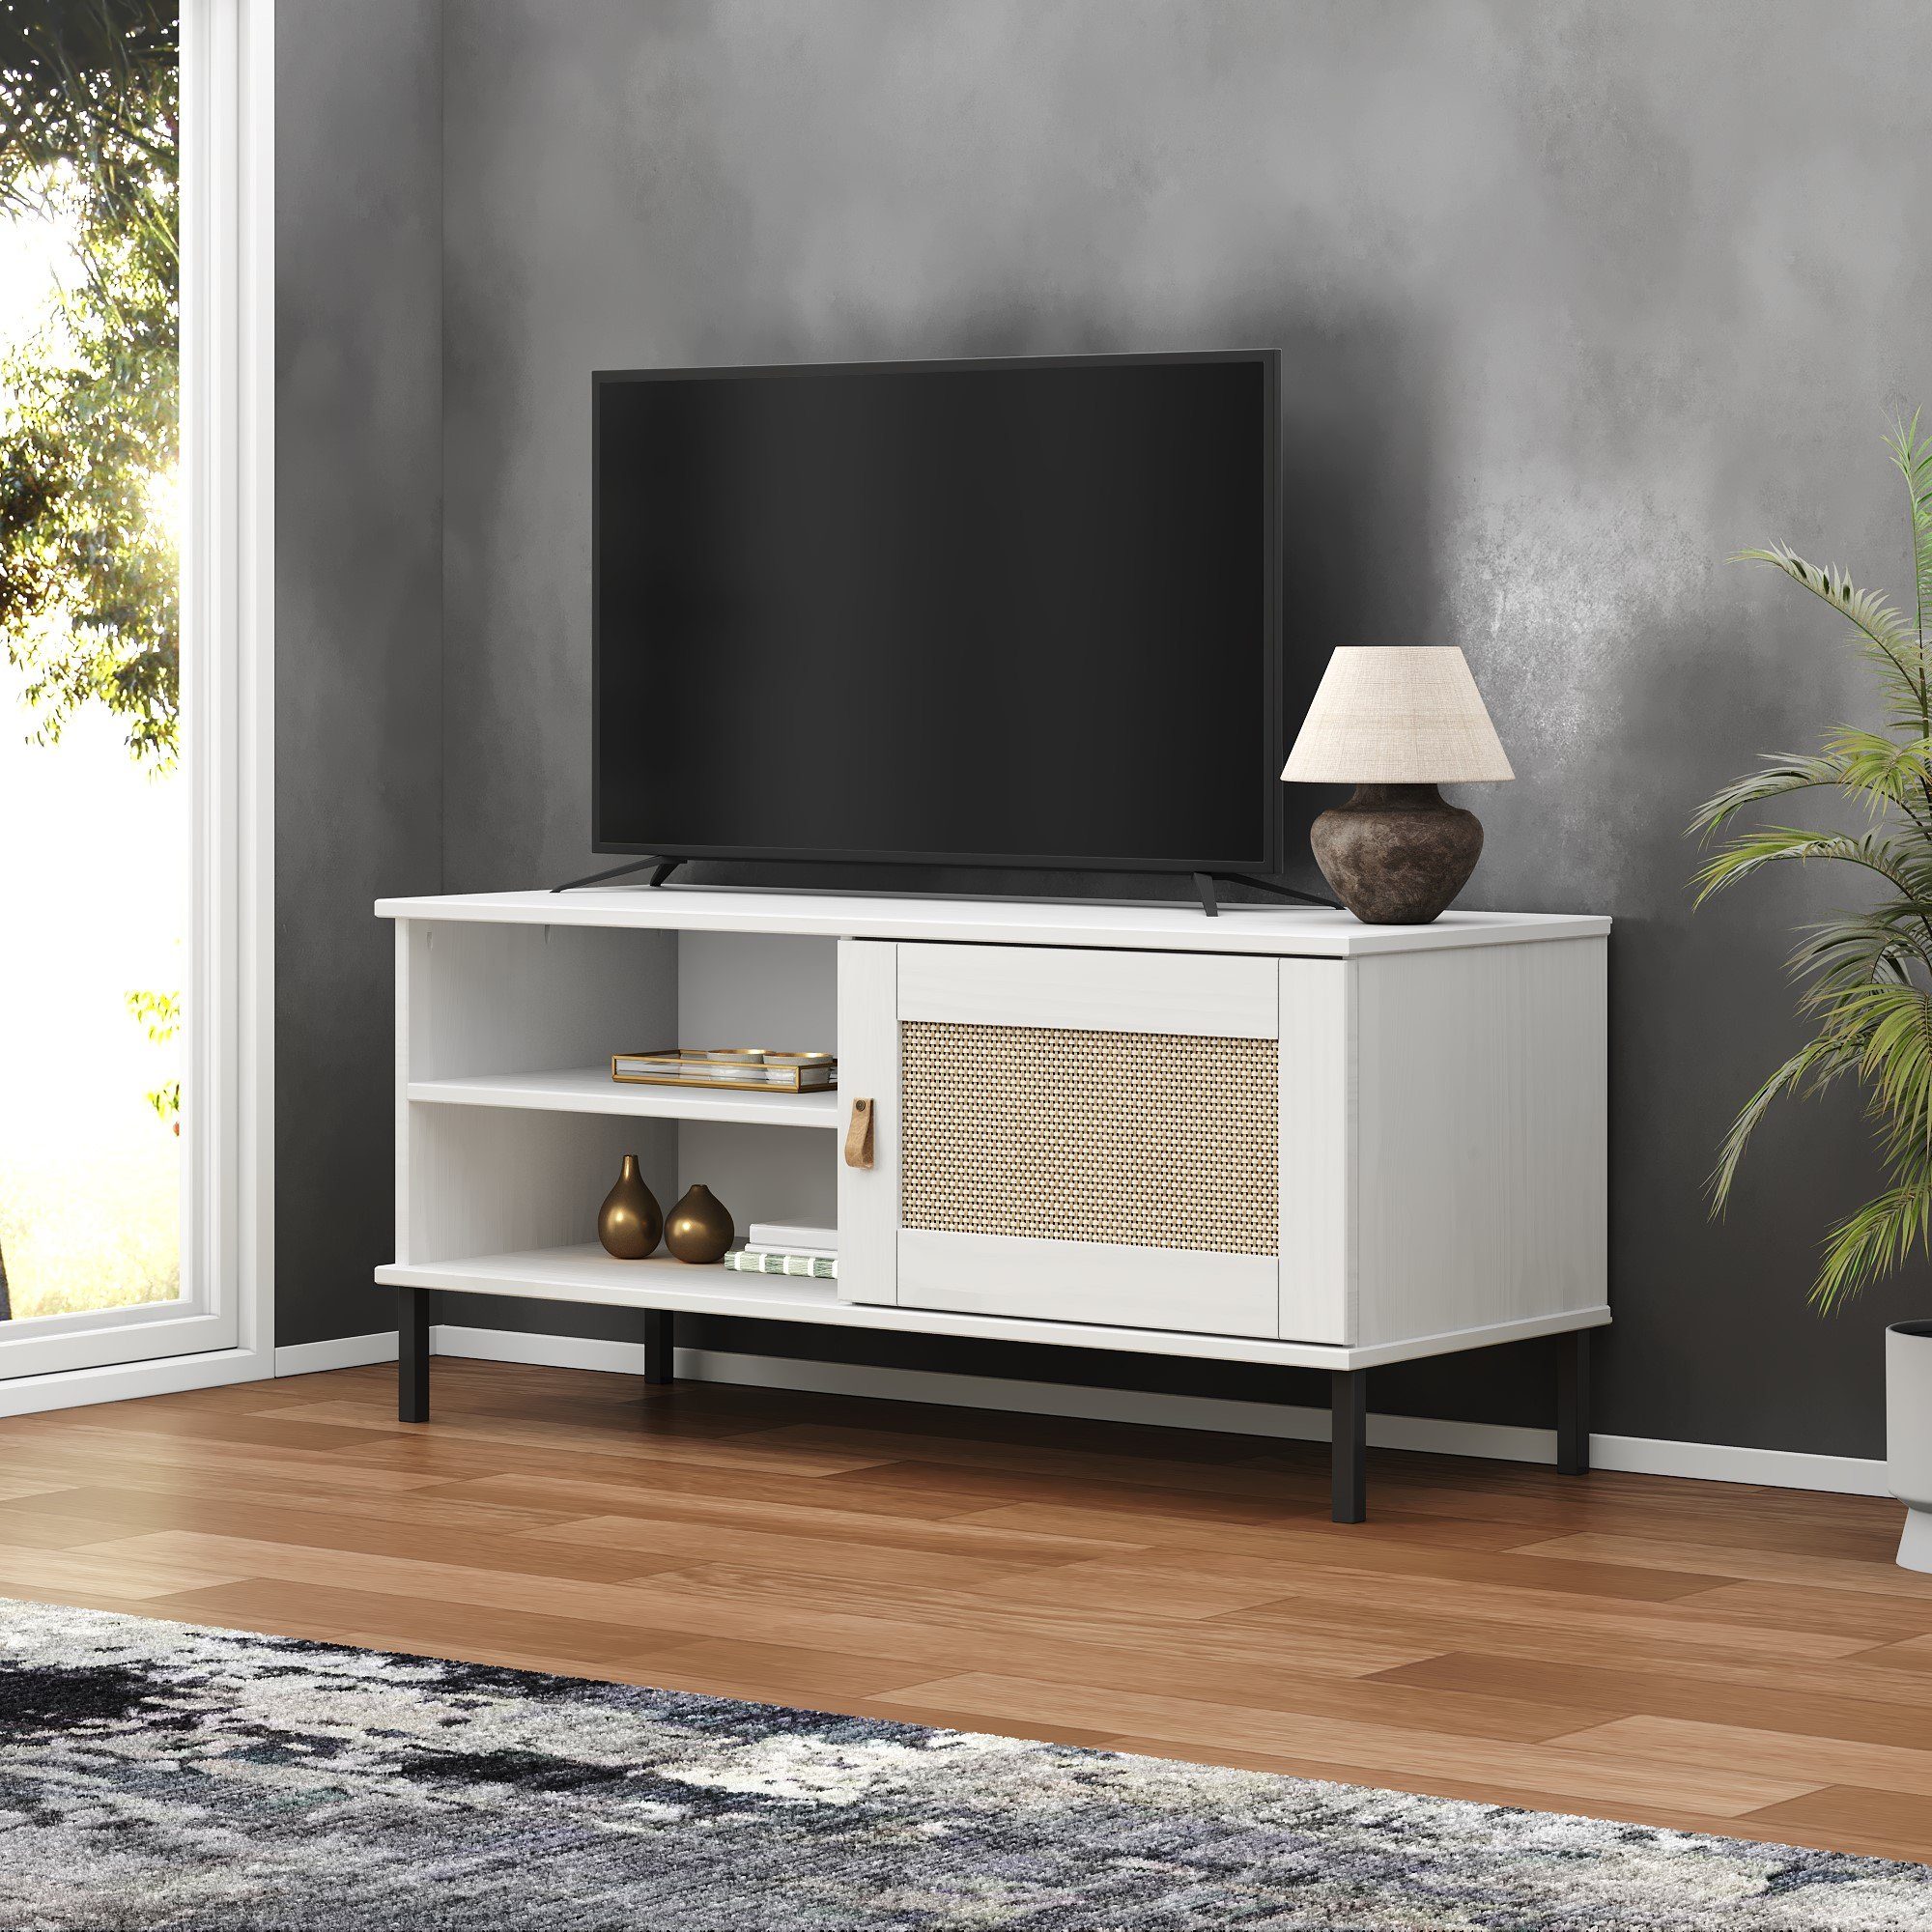 Woodroom TV-Board Valencia, Kiefer massiv lackiert, weiß 105x47x40 BxHxT cm